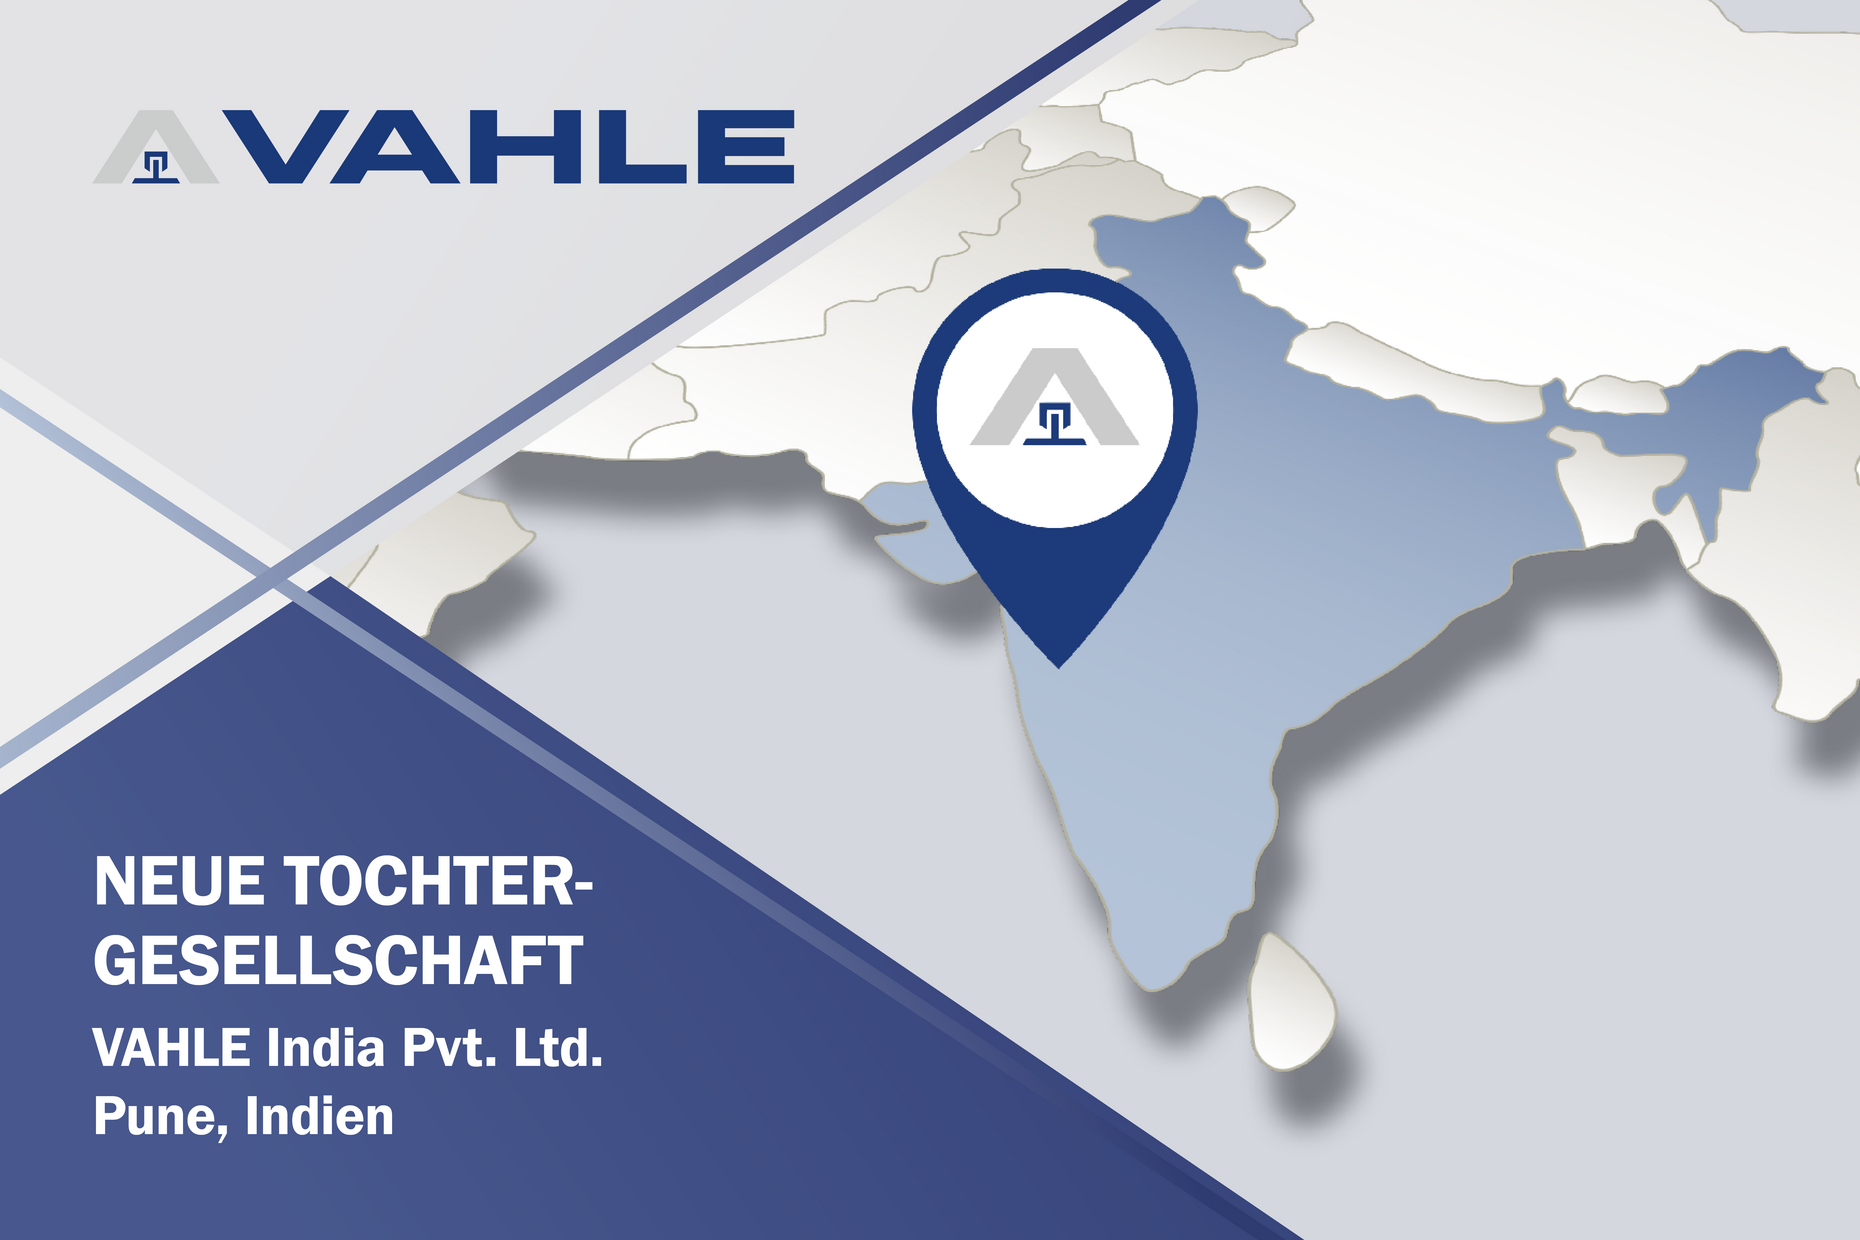 Mit der Gründung der indischen Tochtergesellschaft Vahle India Pvt. Ltd. stärkt die VAHLE Group ihre Marktposition in Indien. (Foto: VAHLE)